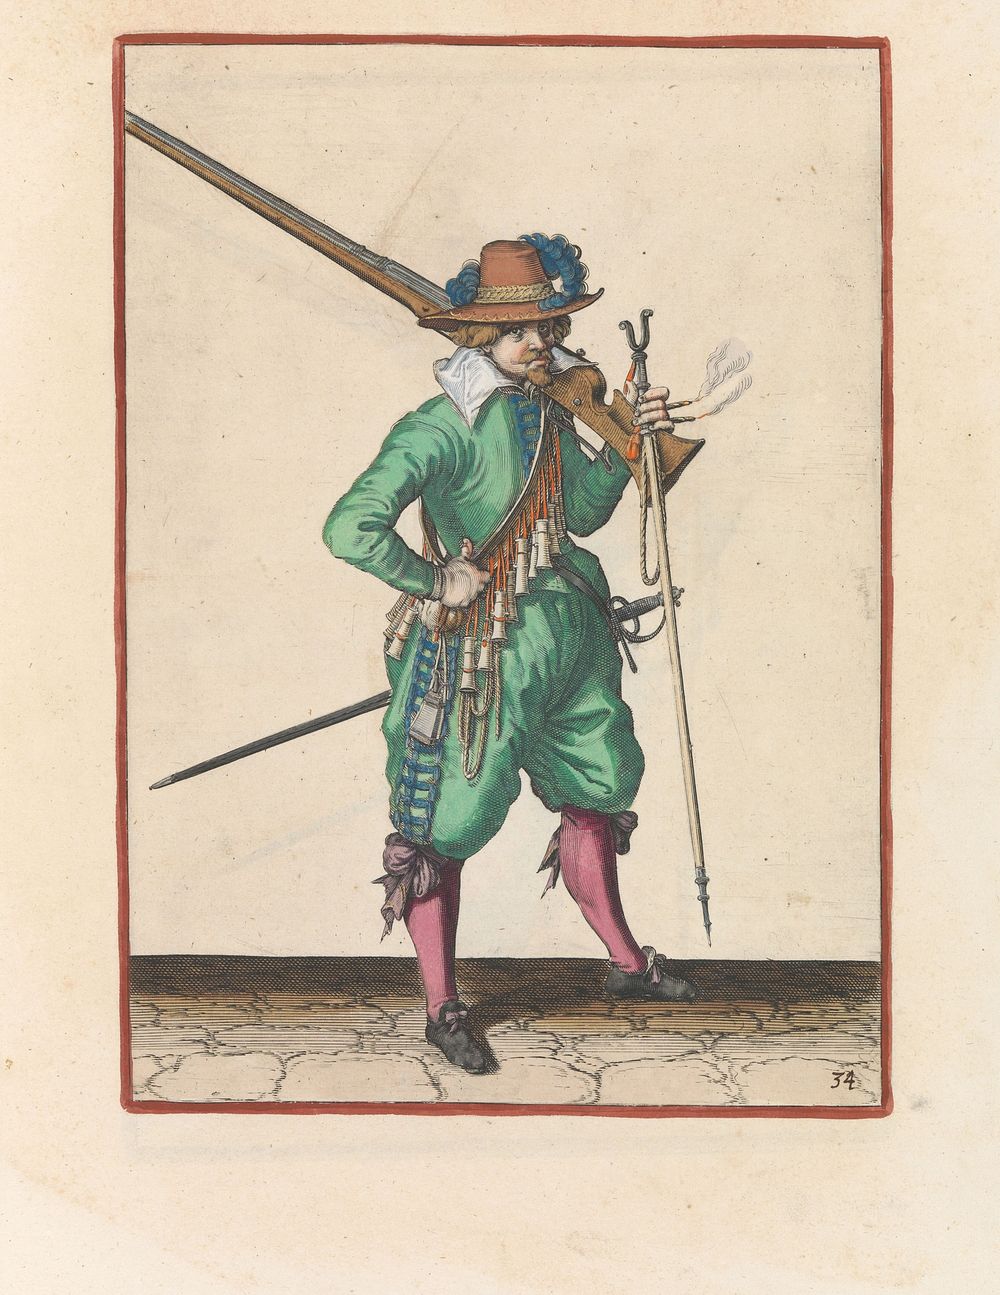 Soldaat die zijn musket op zijn schouder draagt (c. 1597 - 1607) by Jacques de Gheyn II and Jacques de Gheyn II